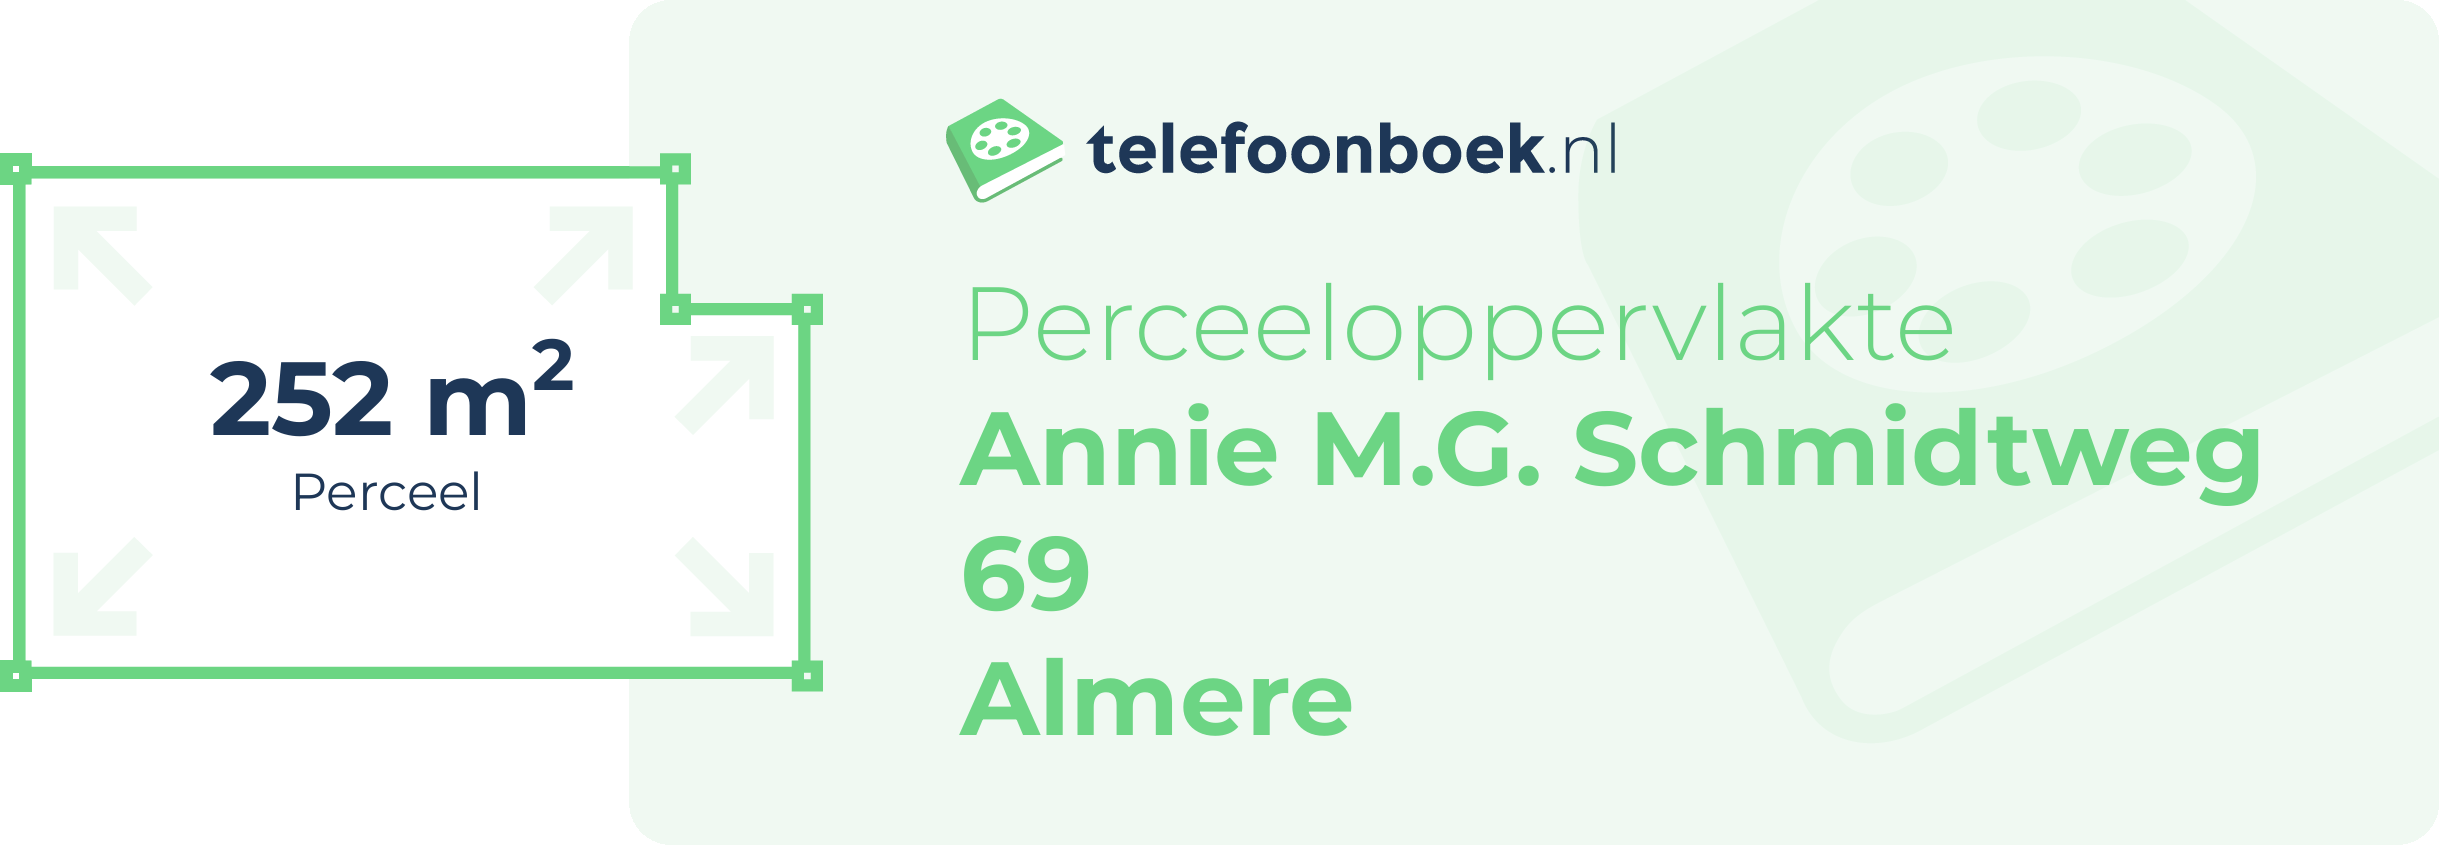 Perceeloppervlakte Annie M.G. Schmidtweg 69 Almere